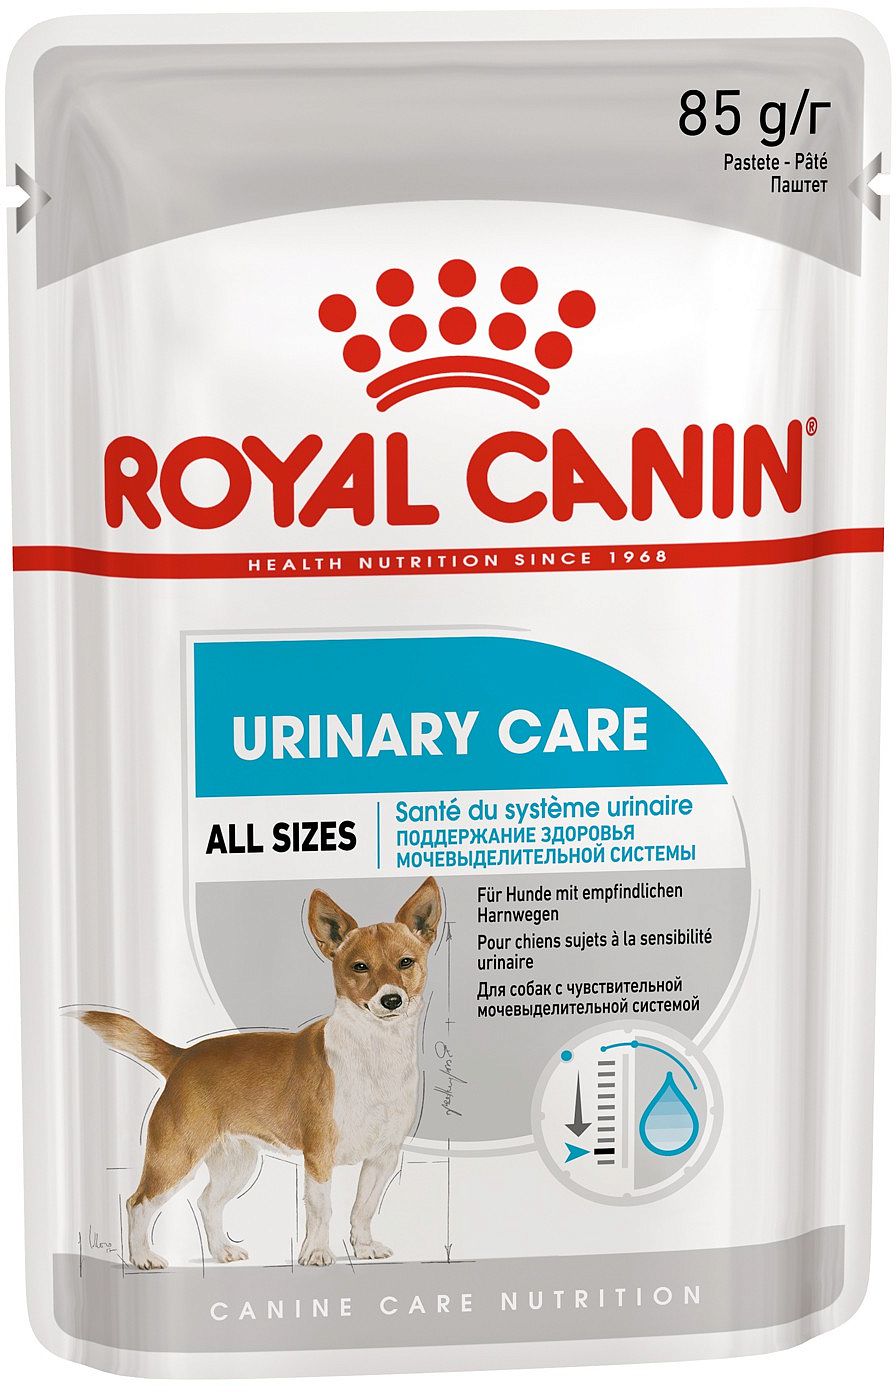 Влажный корм для собак ROYAL CANIN Urinary Care, паштет от зоомагазина Дино Зоо